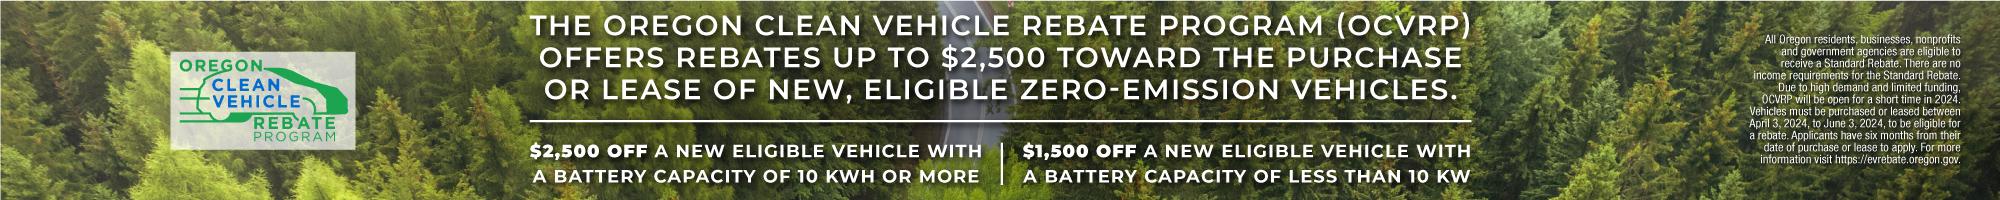 Oregon Clean Vehicle Rebate